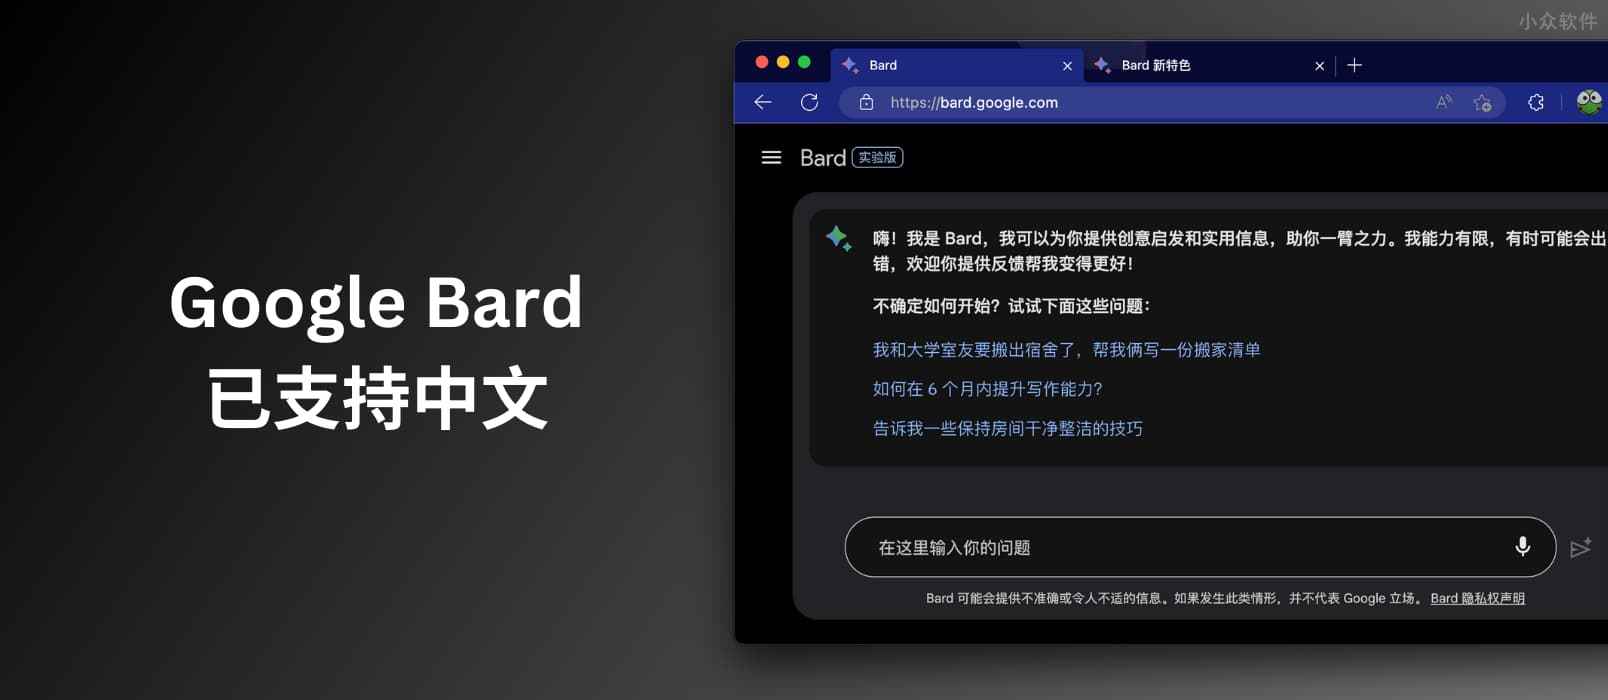 聊天式大型语言模型 Google Bard 已支持中文